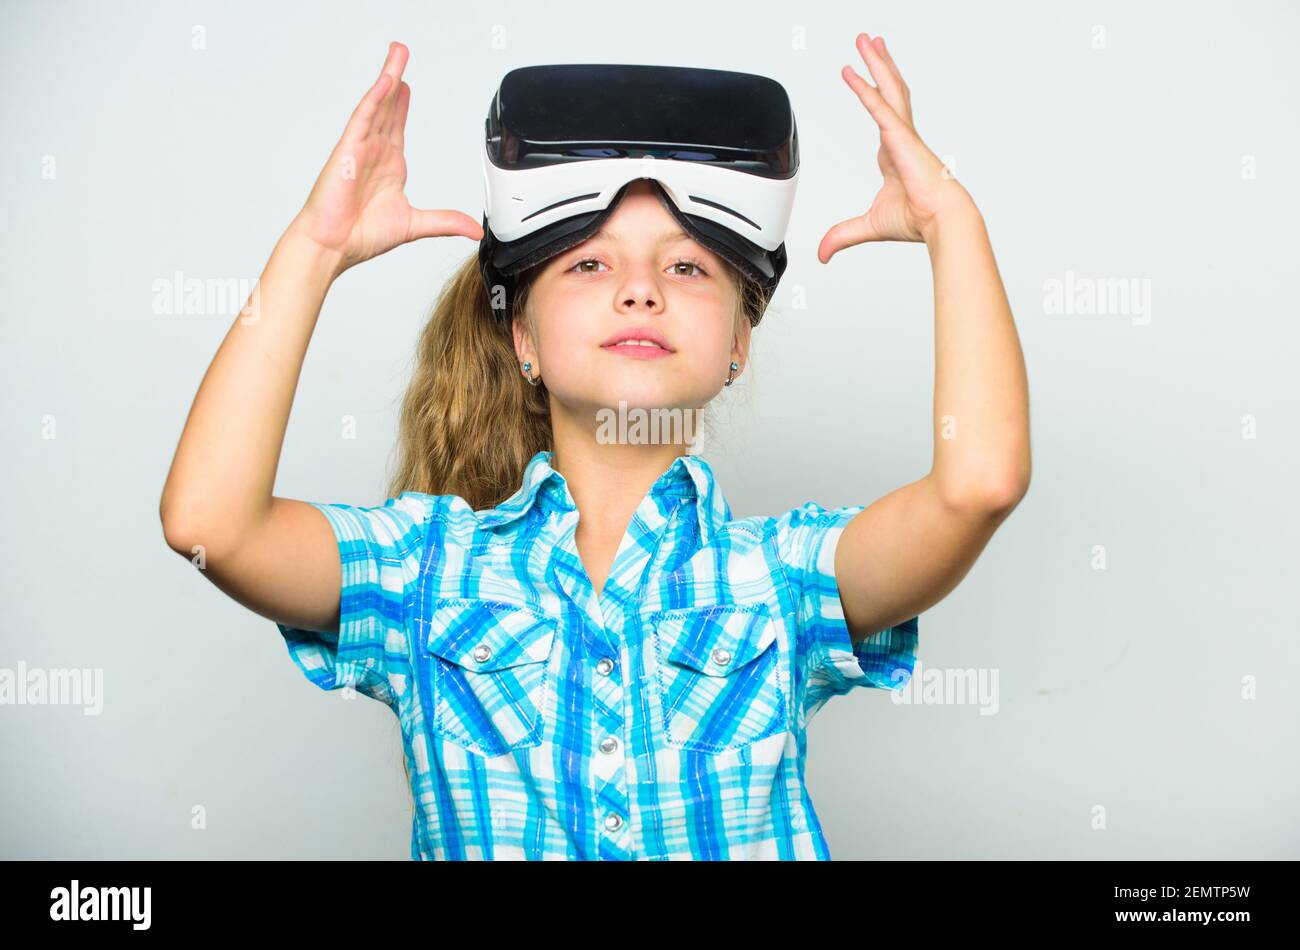 Kleines Gamer-Konzept. Kind spielen virtuelle Spiele mit modernen Gerät.  Entdecken Sie virtuelle Geschäftschancen. Neueste Kinder Virtual Reality- Spiele. Virtual Reality macht Spaß für alle Altersgruppen. Kind Mädchen mit  vr Brille Stockfotografie - Alamy